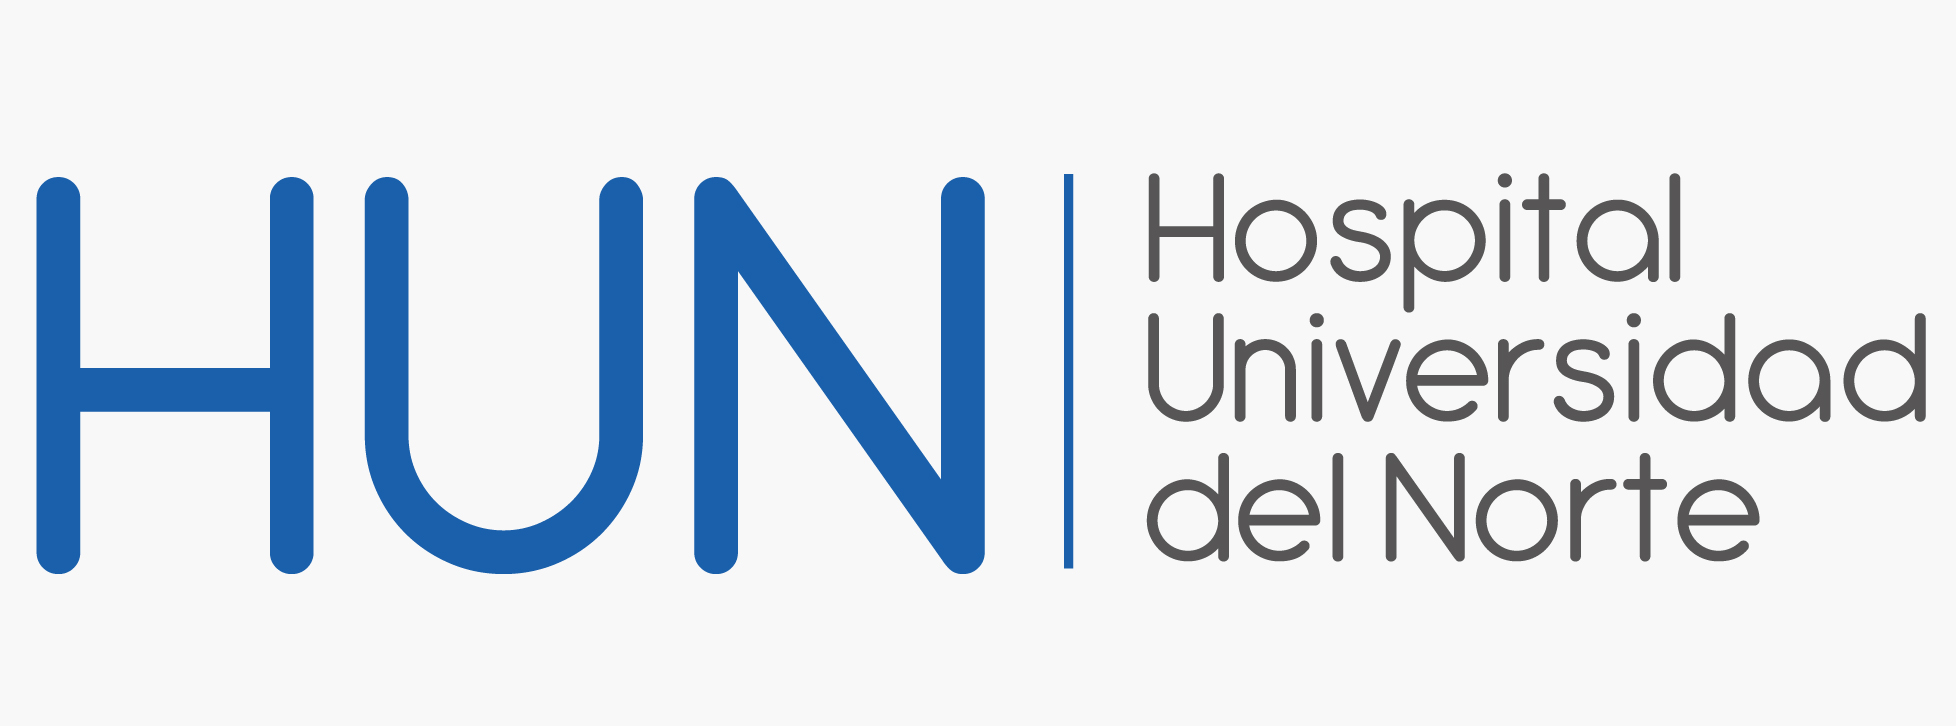 Logo Hospital Universidad del Norte